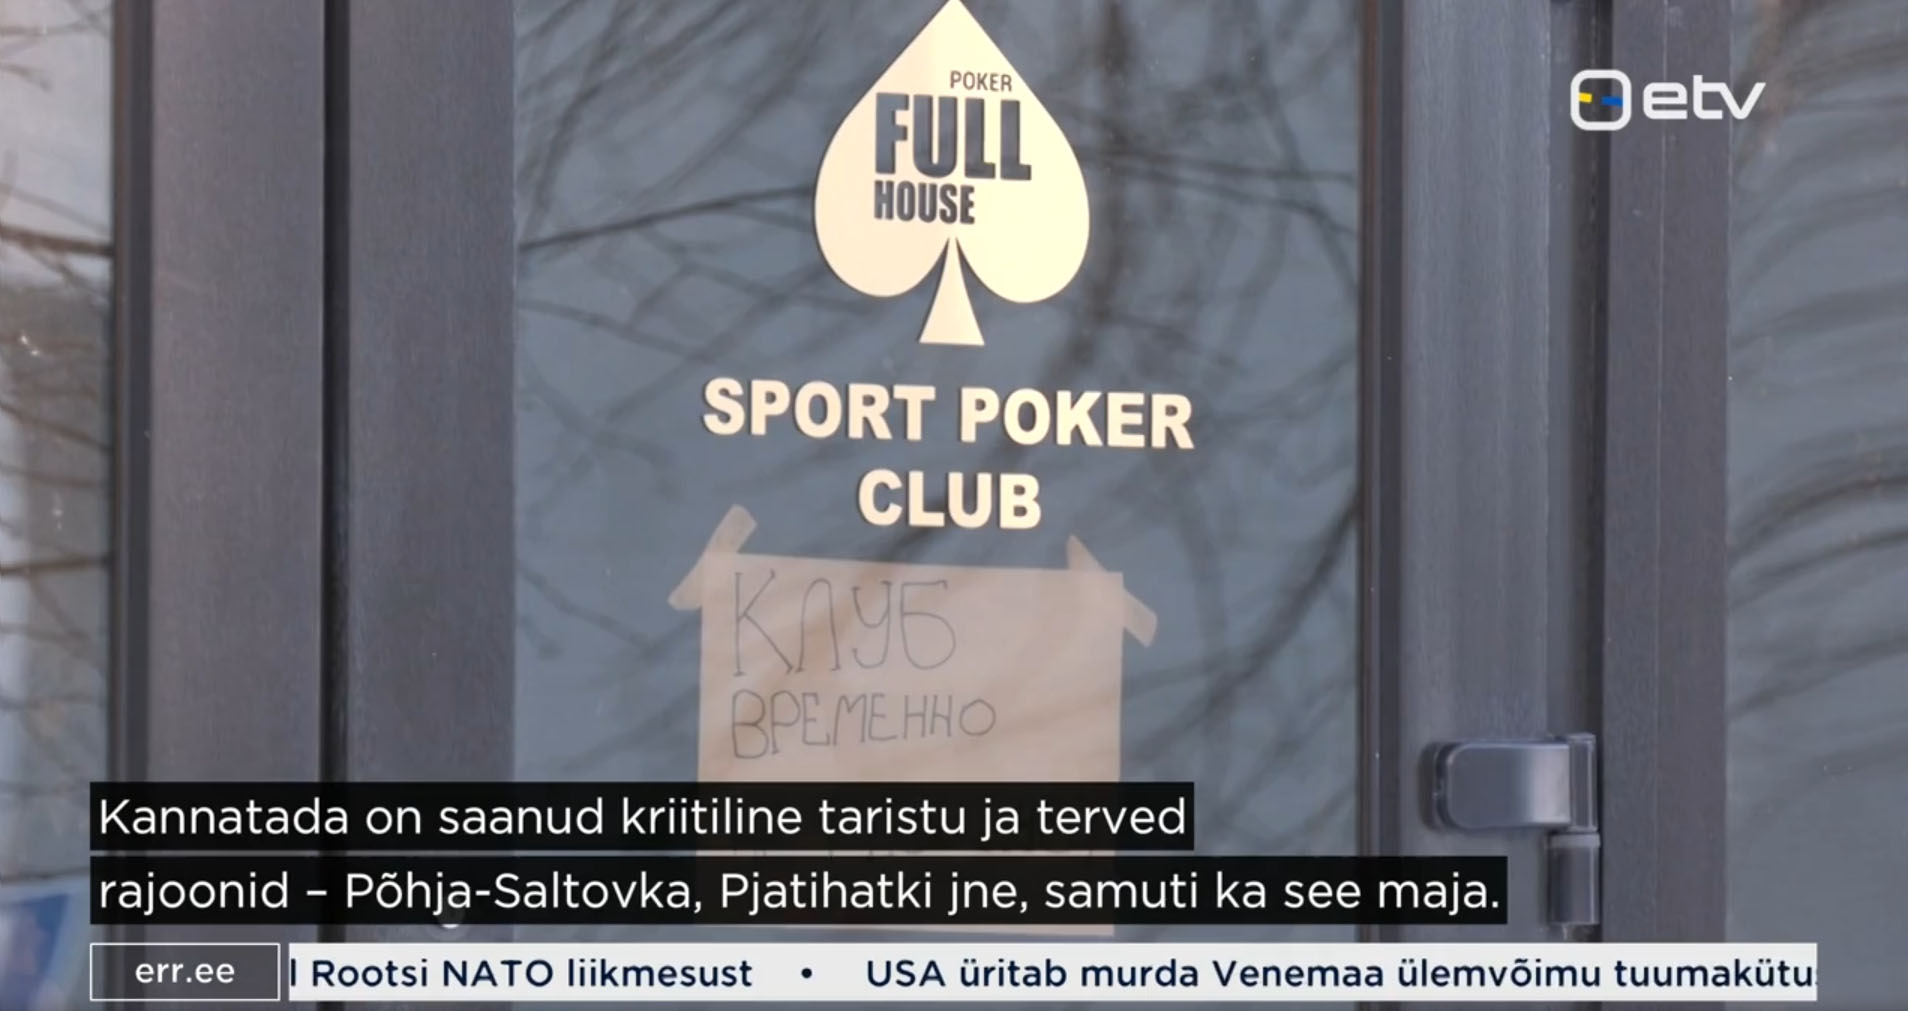 Harkivi pokkeriklubi Poker Full House. Tegu on ühe vanema pokkeriklubiga Ukrainas